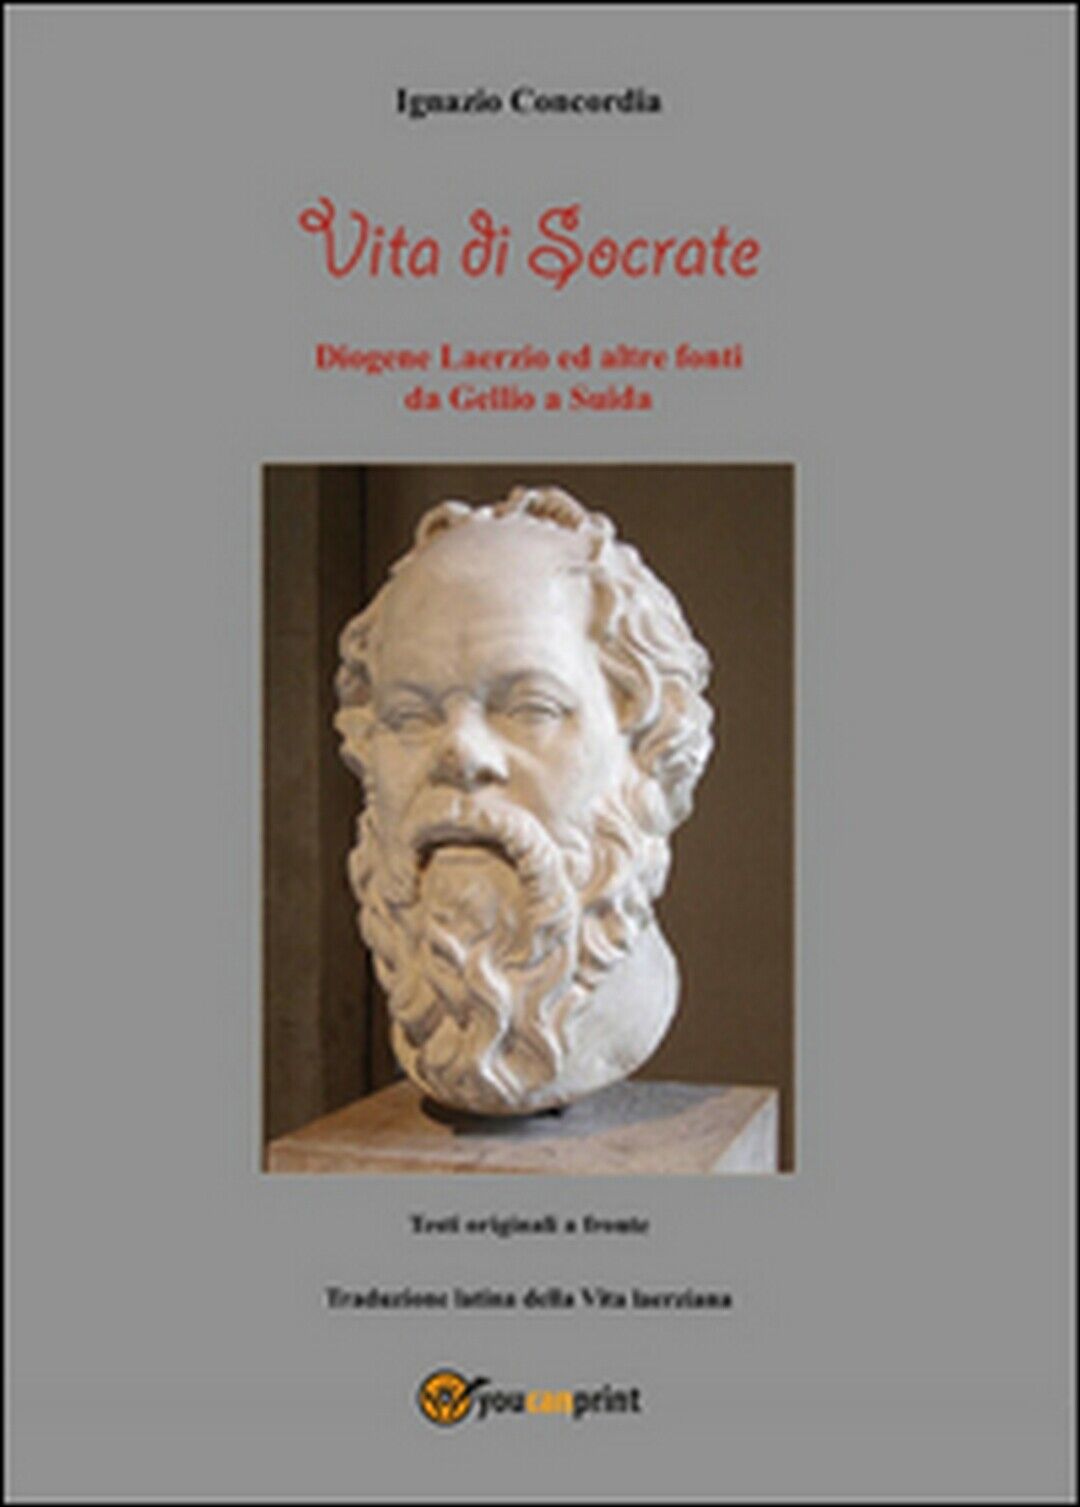 Vita di Socrate  di Ignazio Concordia,  2016,  Youcanprint